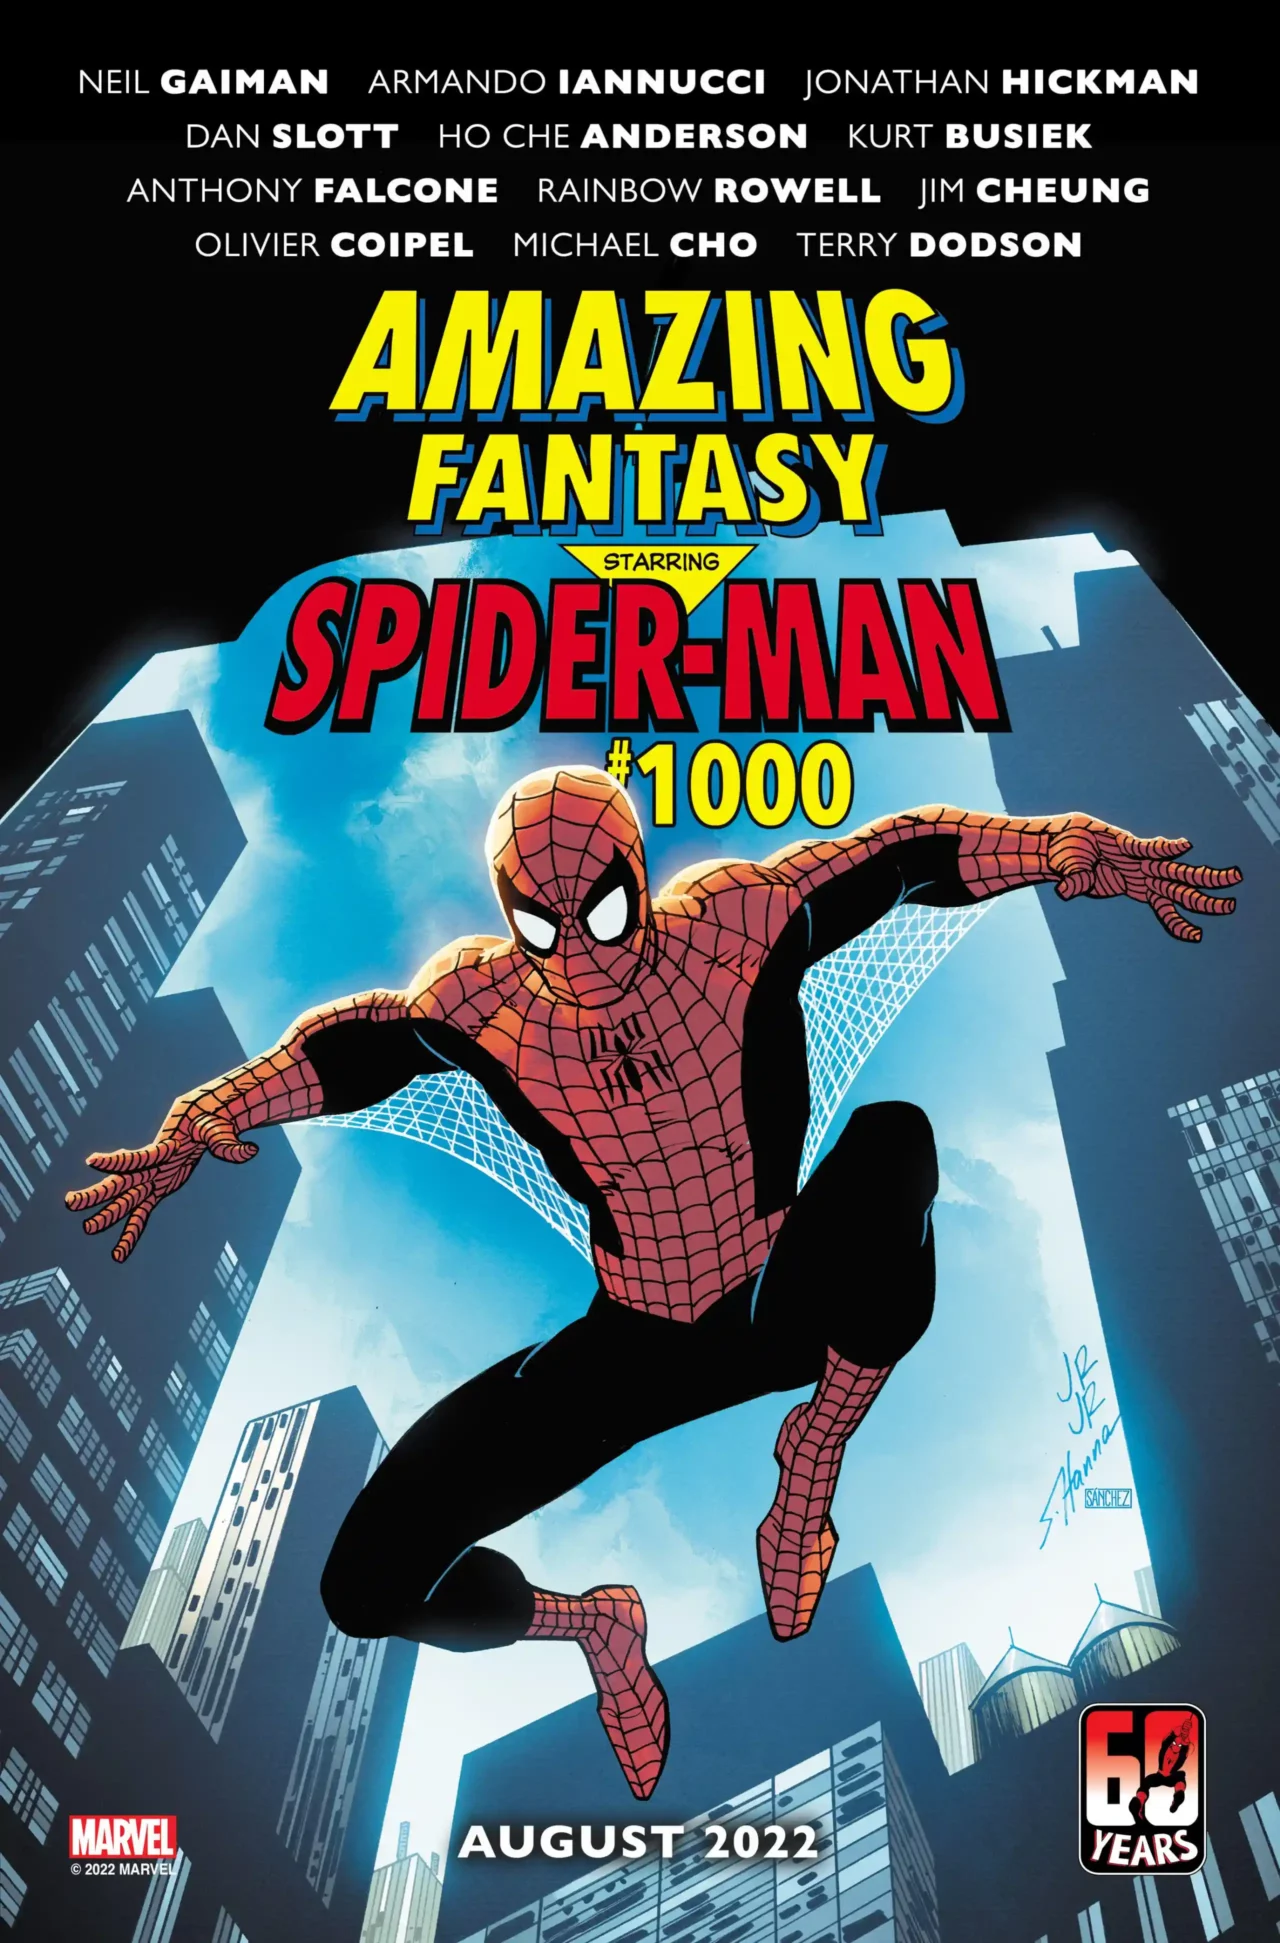 Amazing Fantasy #1000 contará com Neil Gaiman